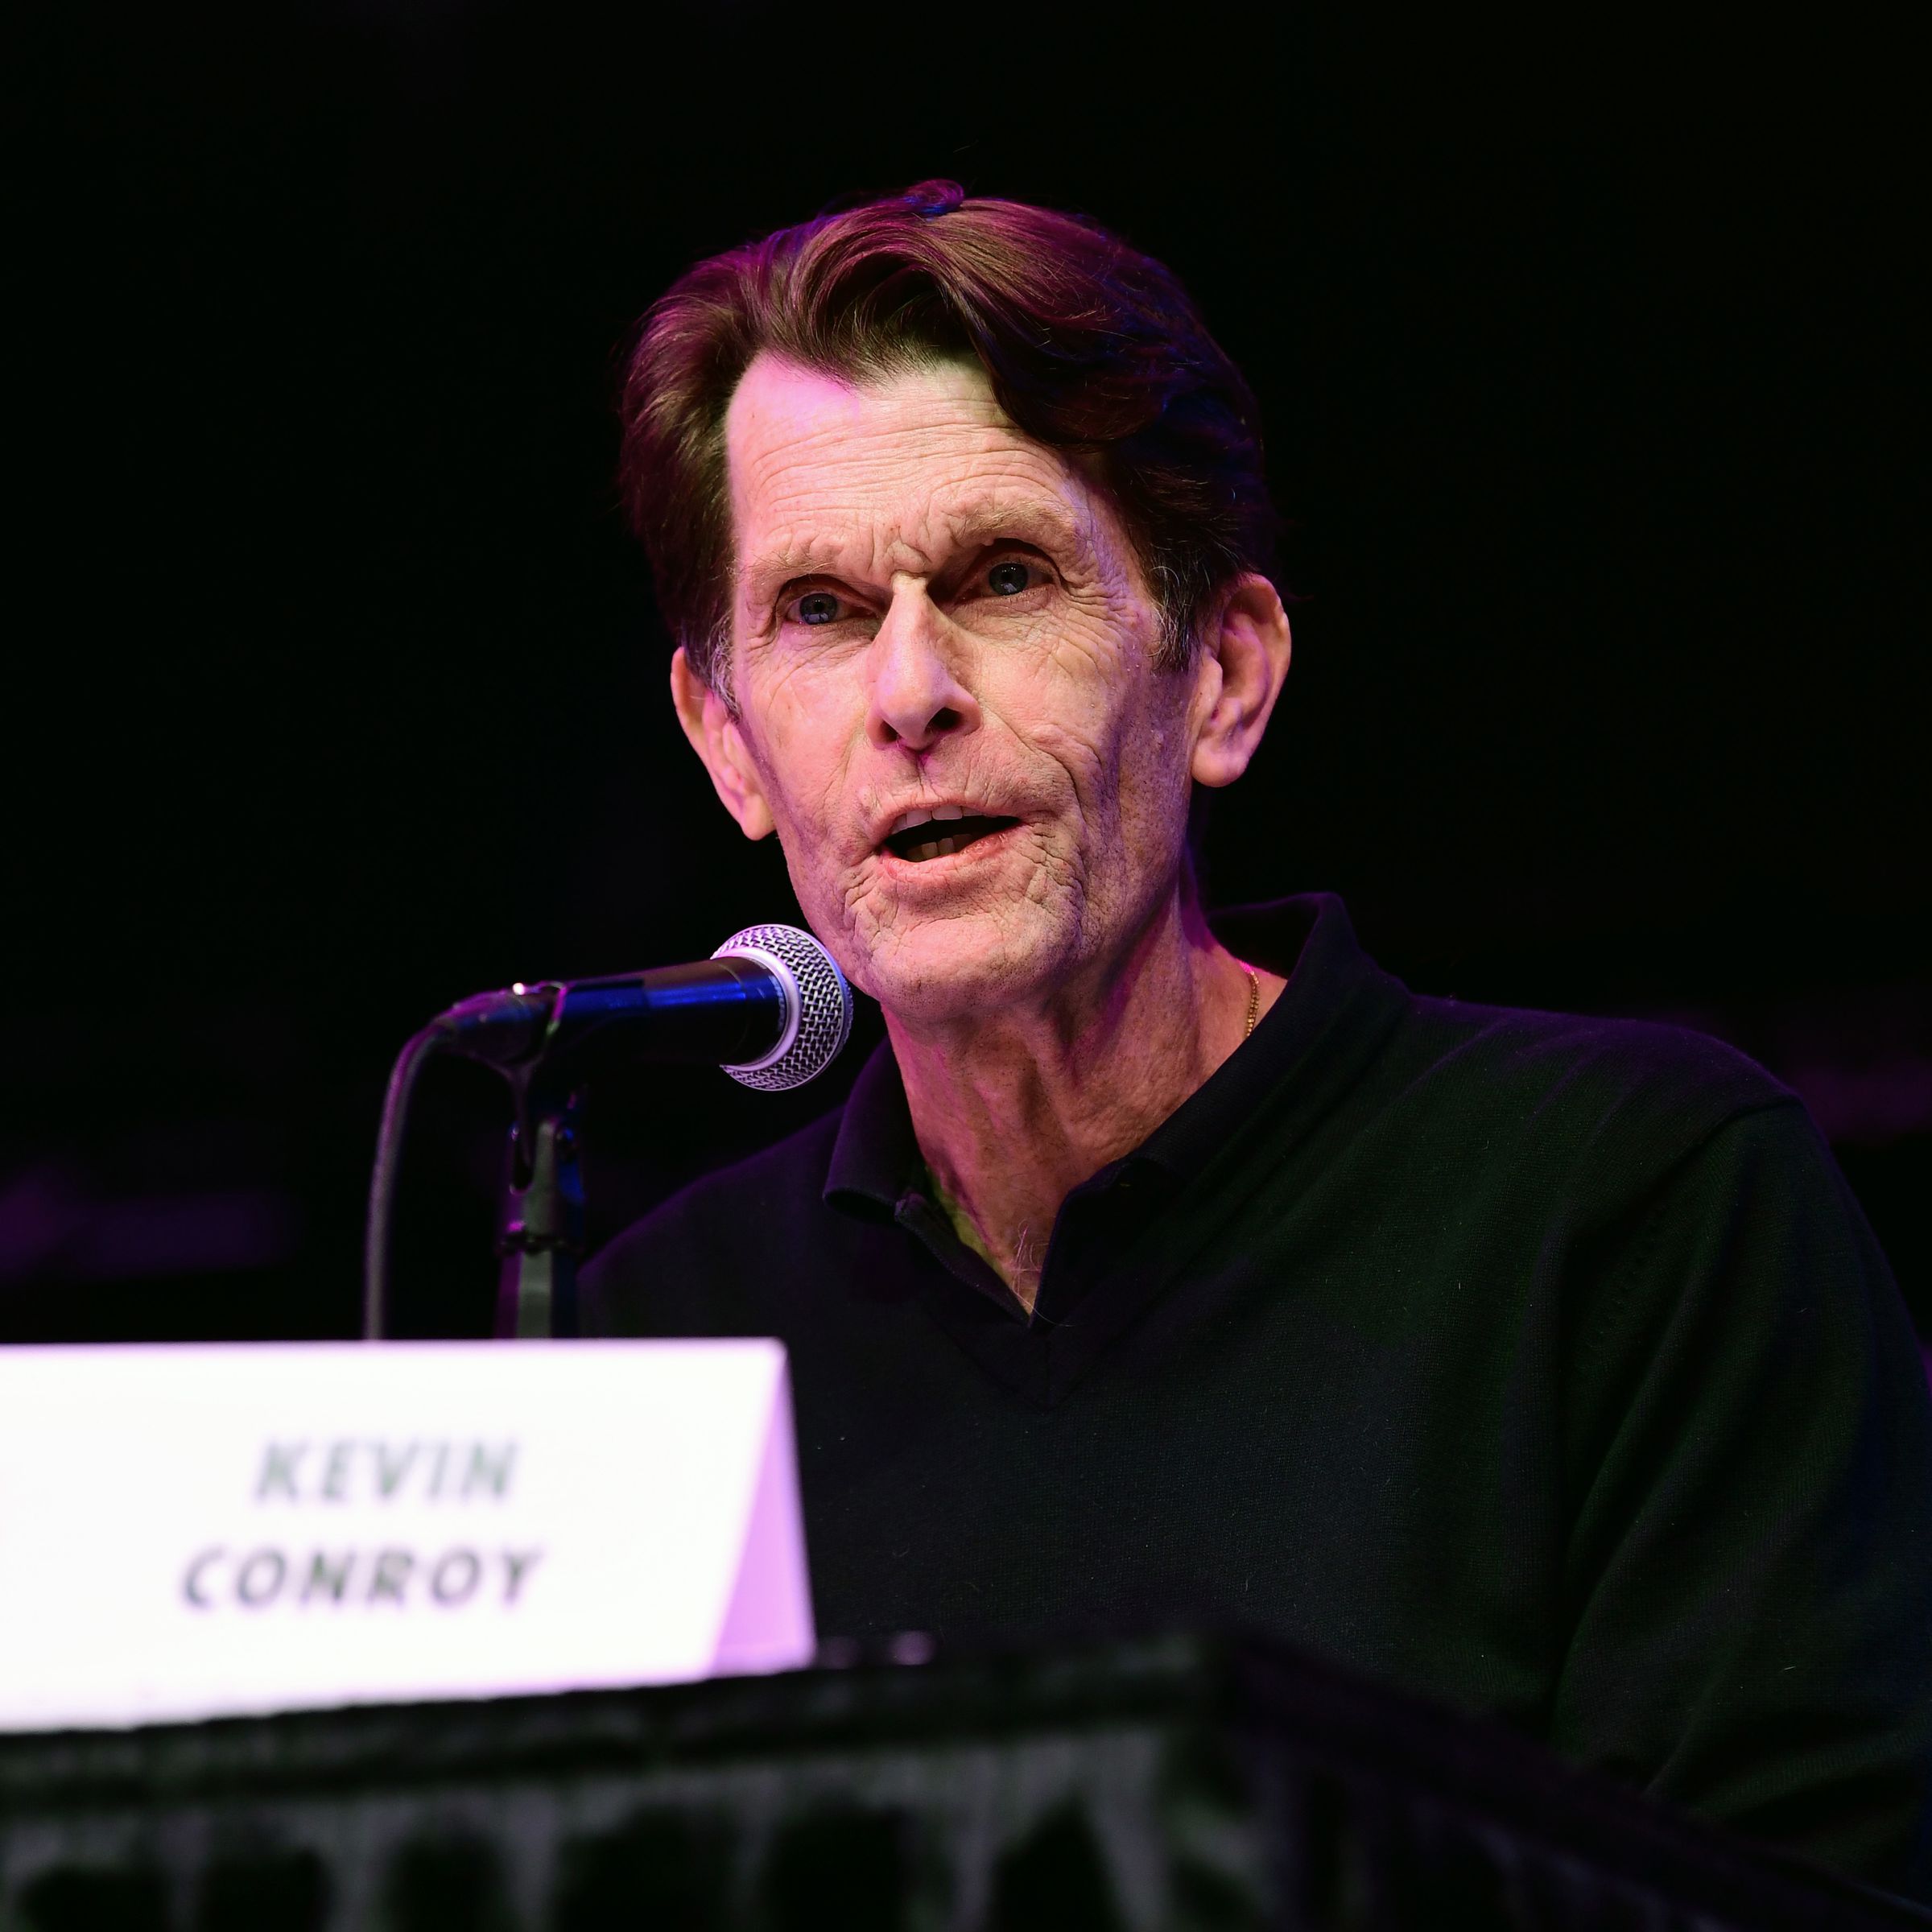 Kevin Conroy at 2021 Los Angeles Comic Con